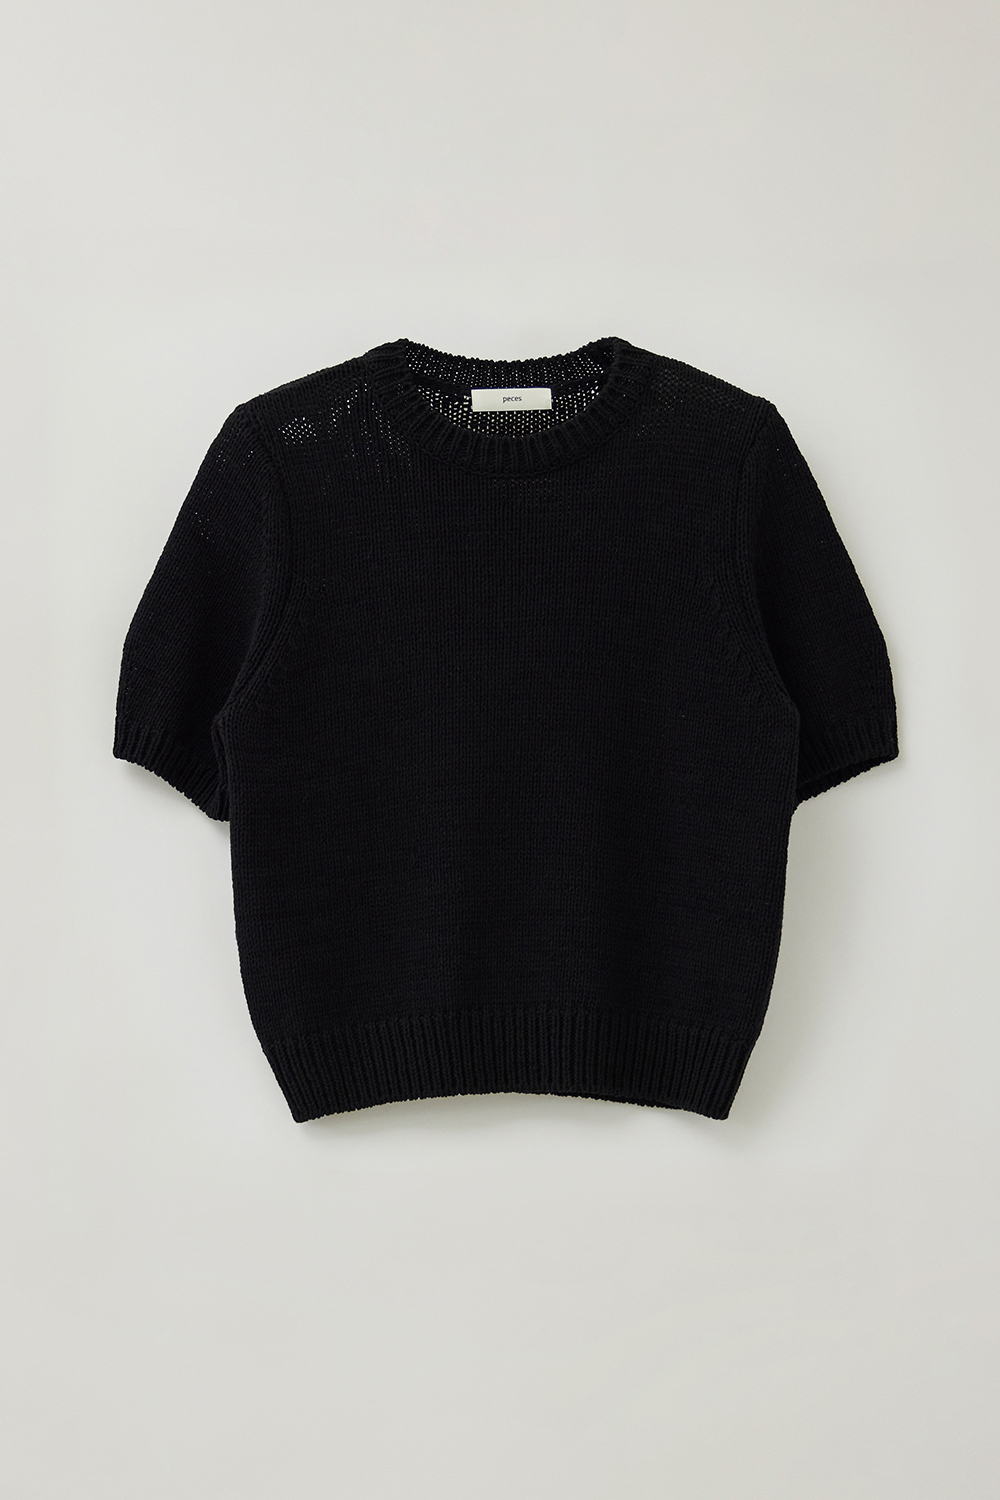 Jeanne knit (Black)